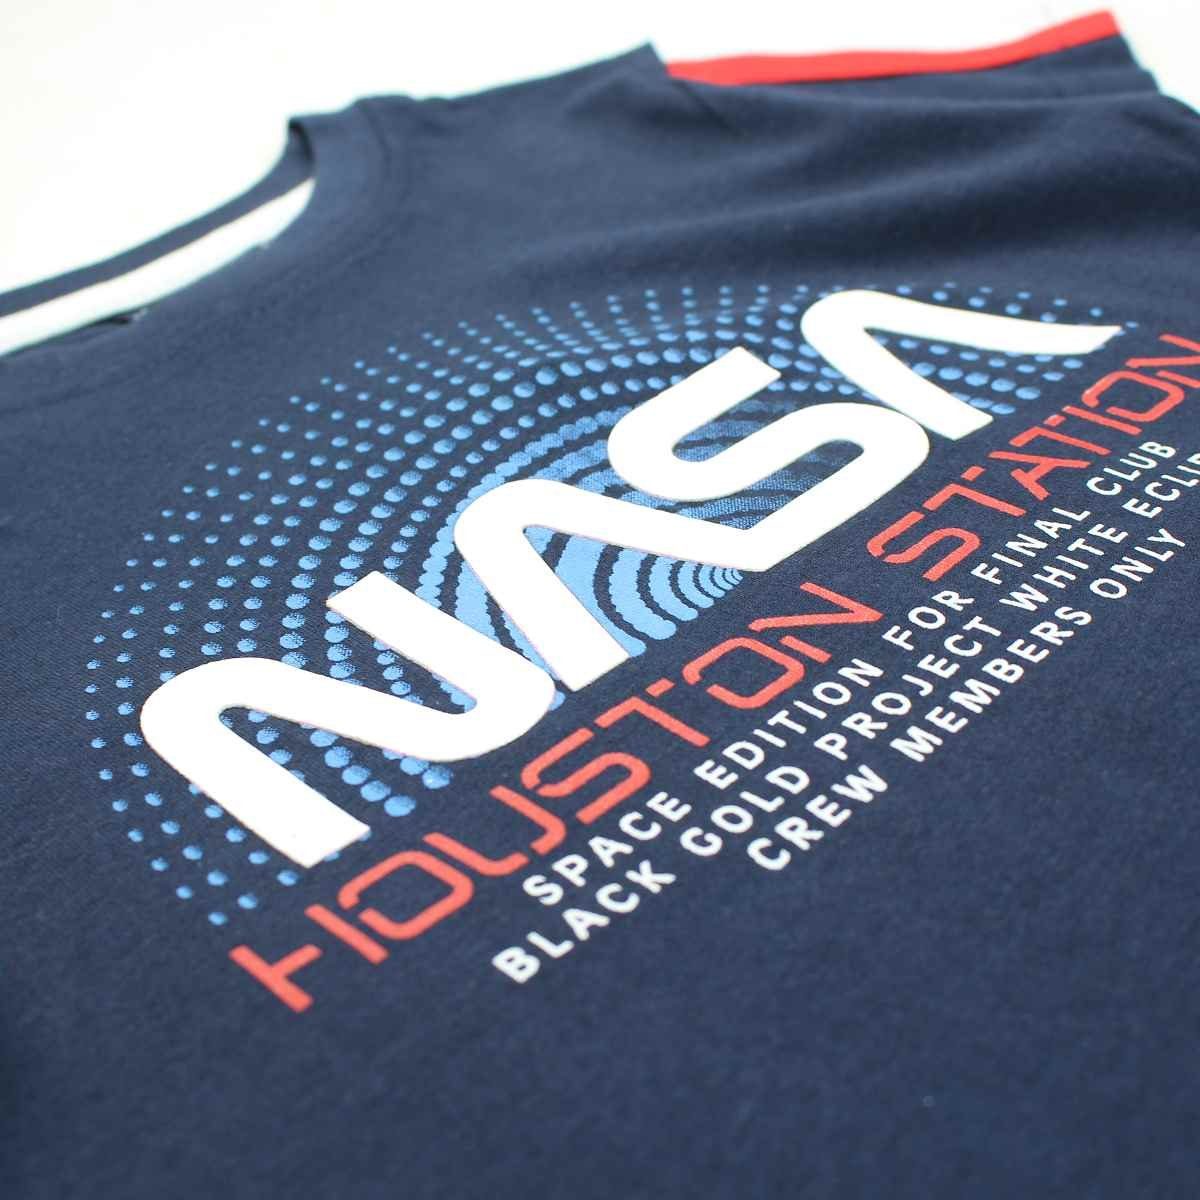 Print-Shirt 104 Gr. Space Center 100% NASA Baumwolle T-Shirt Jungen 164, NASA Blau Kinder kurzarm bis